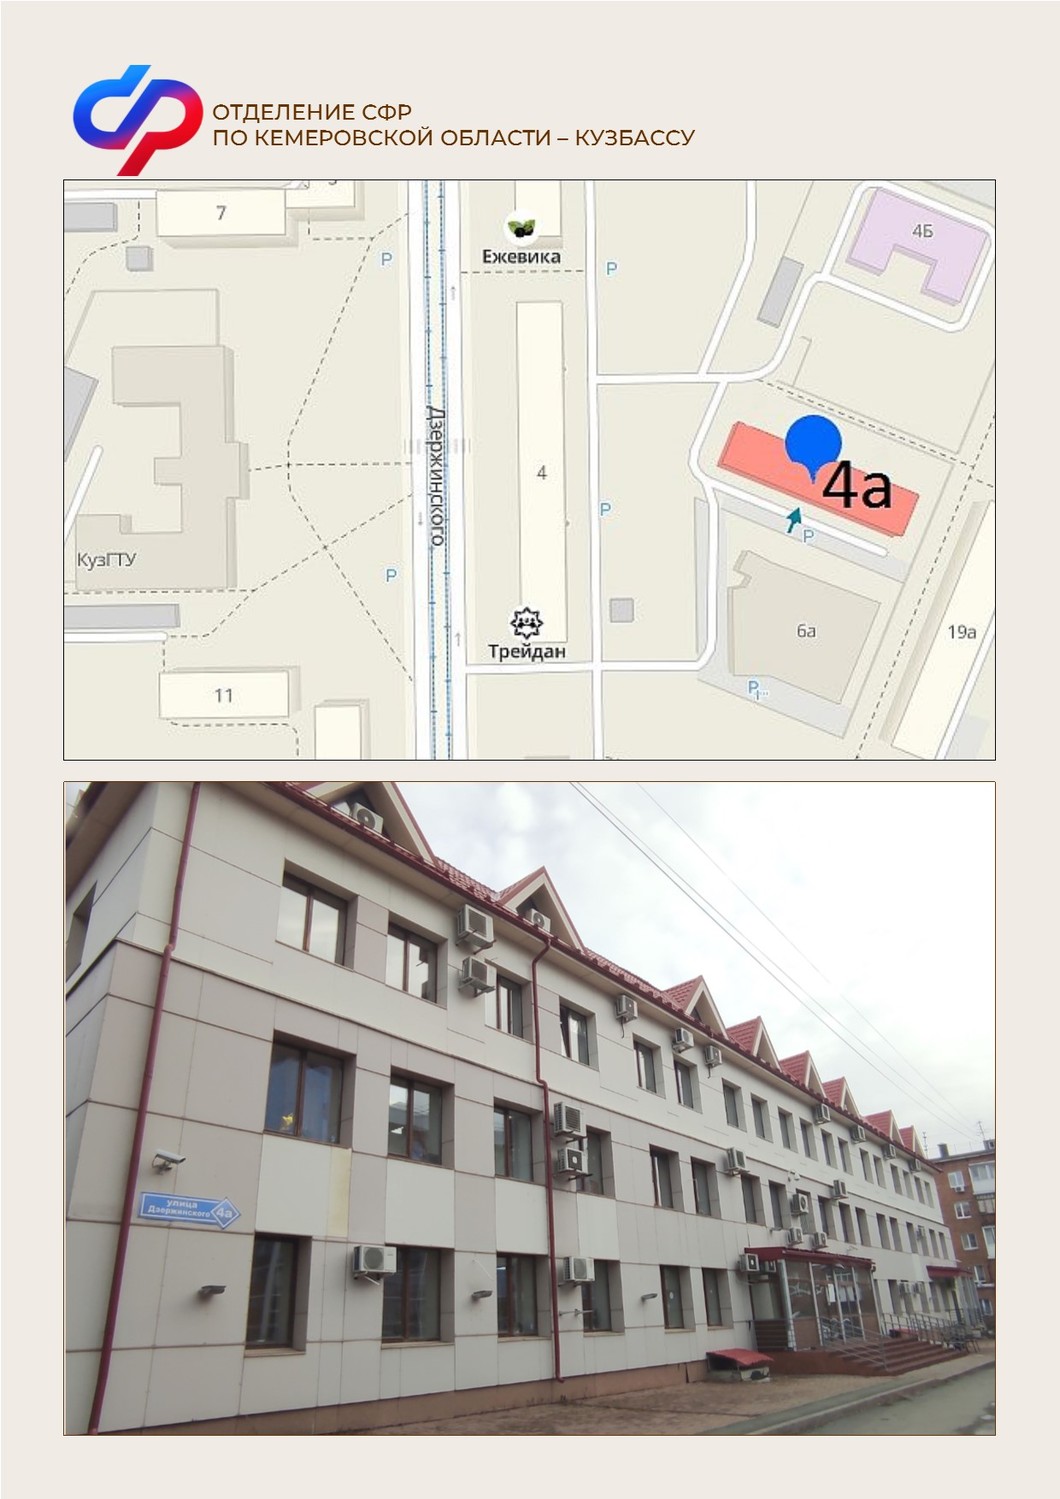 Клиентская служба по Центральному району города Кемерово и Кемеровскому району меняет адрес